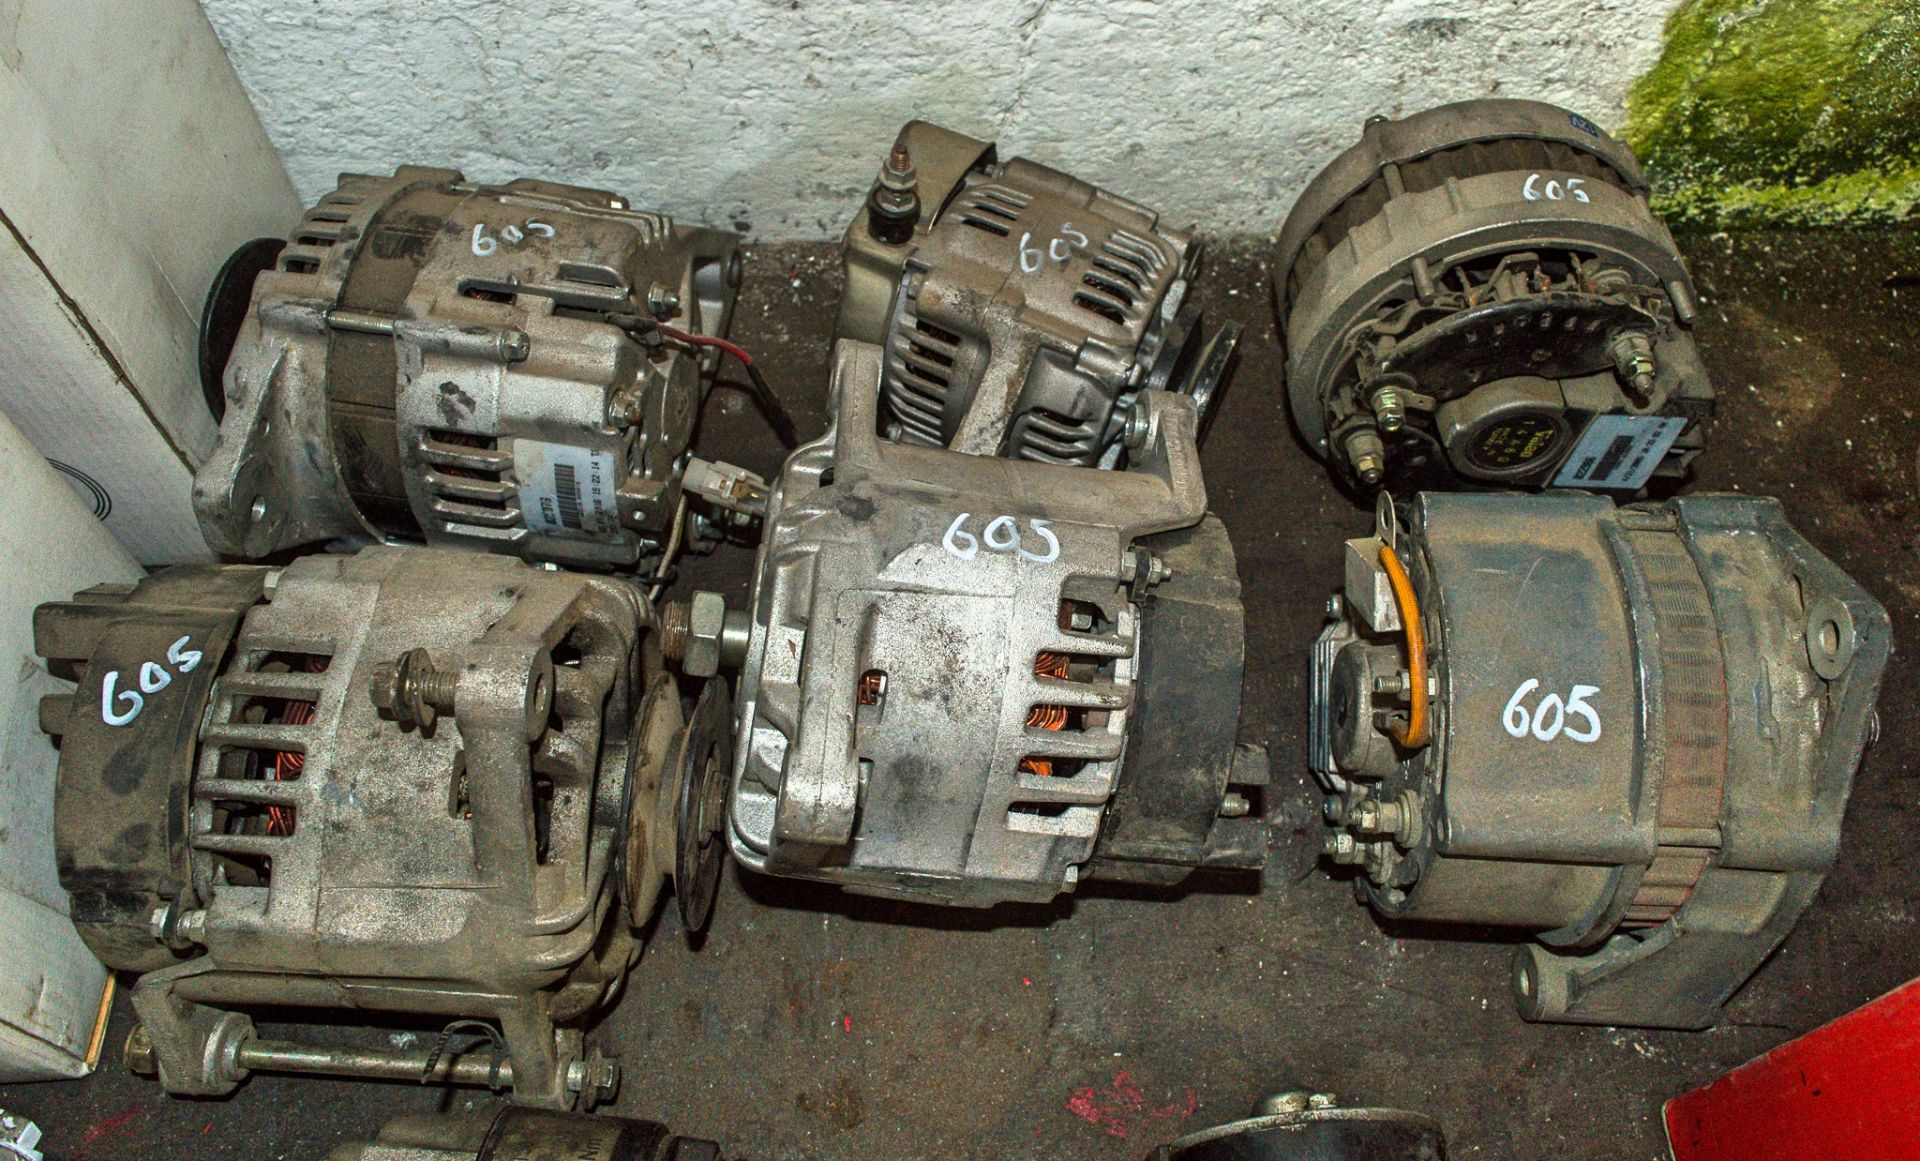 6 - various alternators